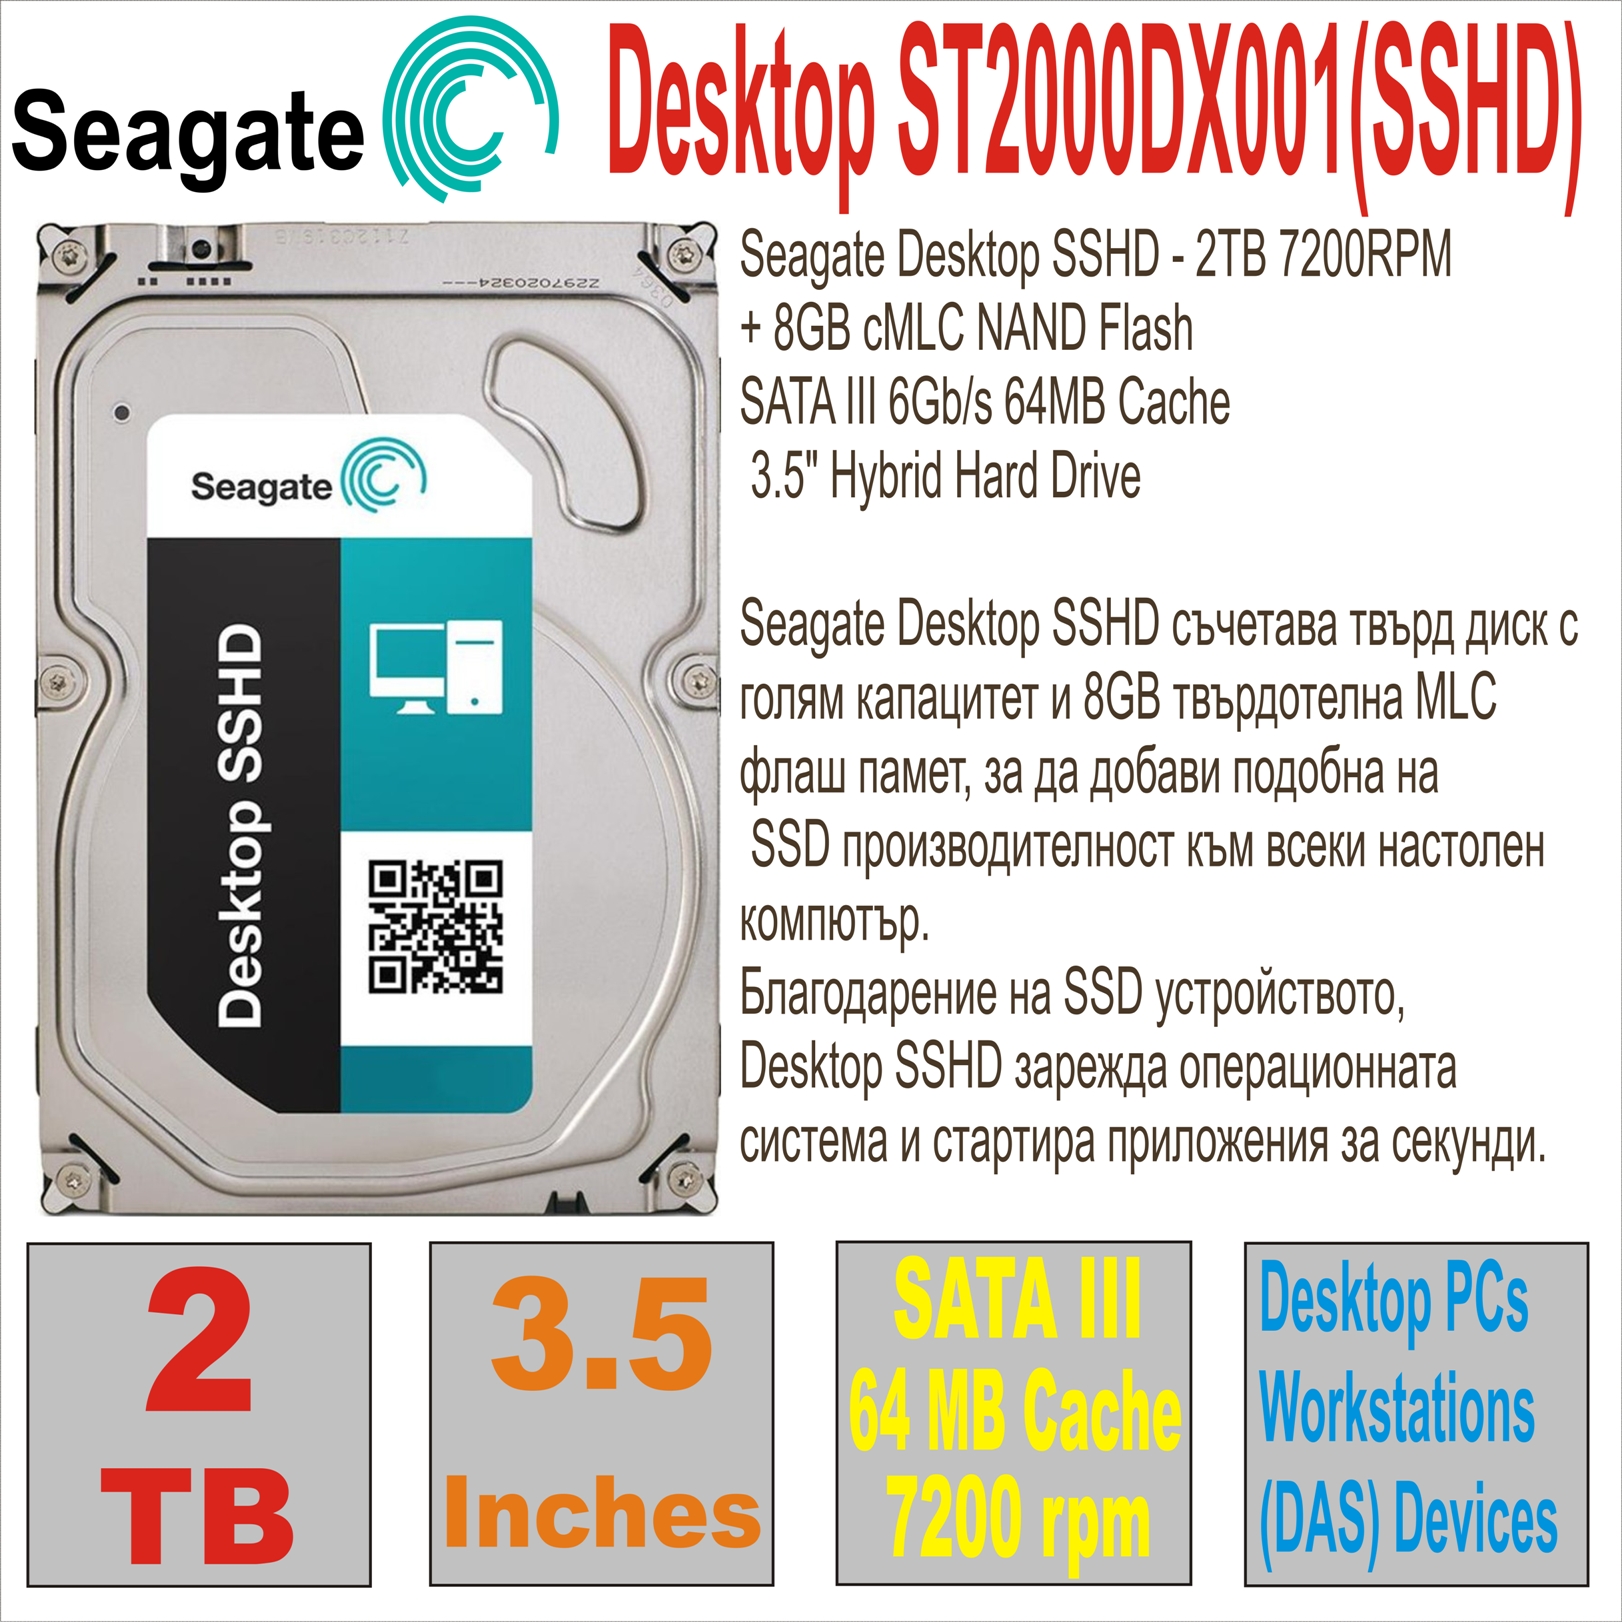 HDD 3.5` 2 TB SEAGATE Desktop ST2000DX001(SSHD)